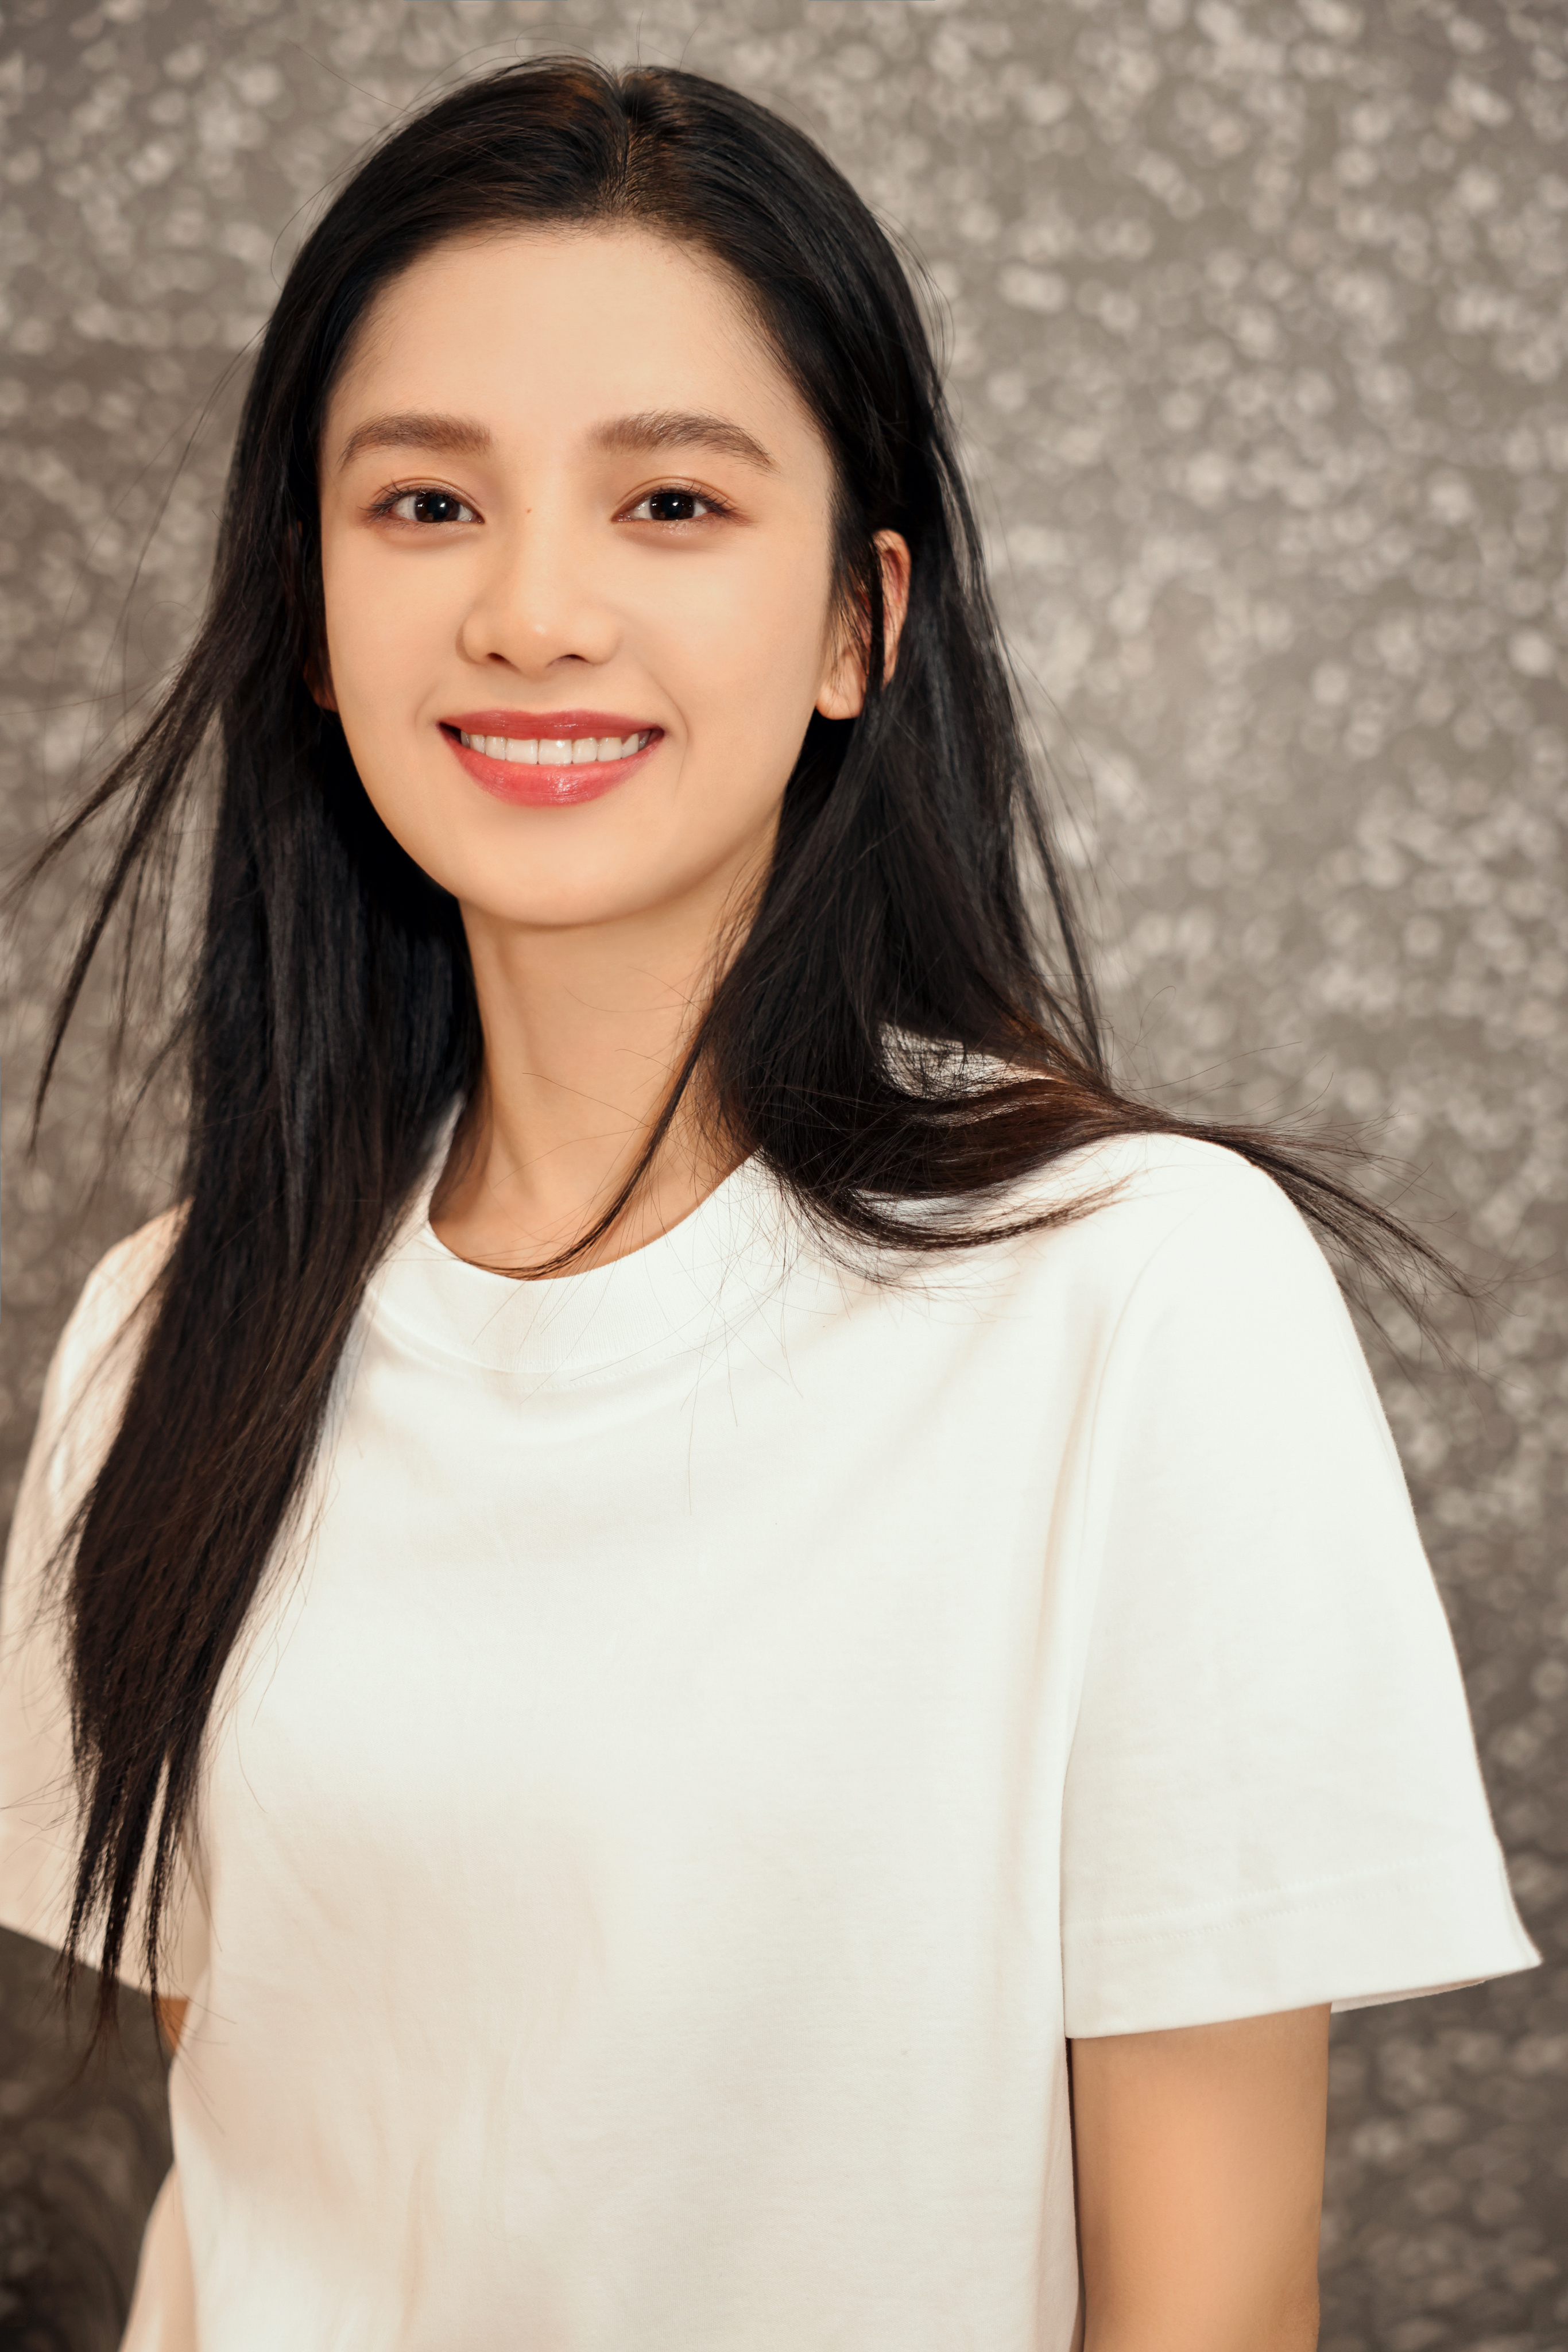 People 2731x4096 Zhang Jingyi model women T-shirt white tops Asian portrait display